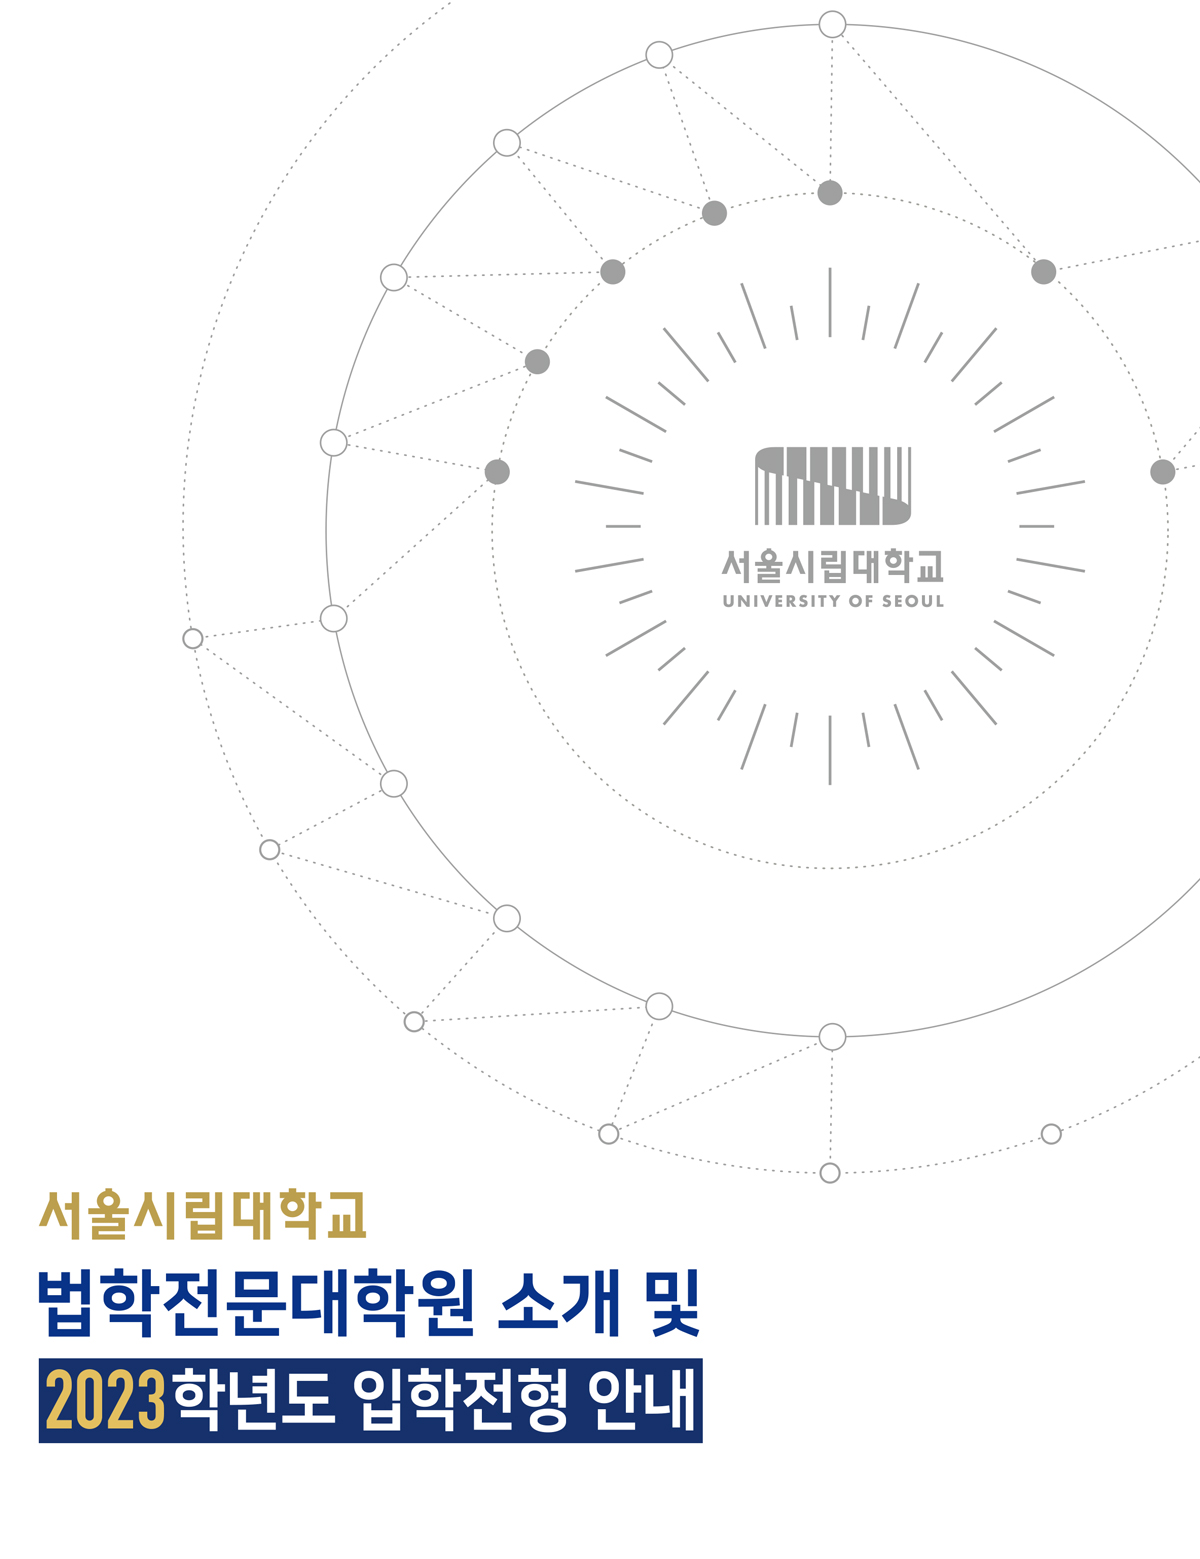 2023 법학전문대학원 모집요강 서울시립대학교 UNIVERSITY OF SEOUL